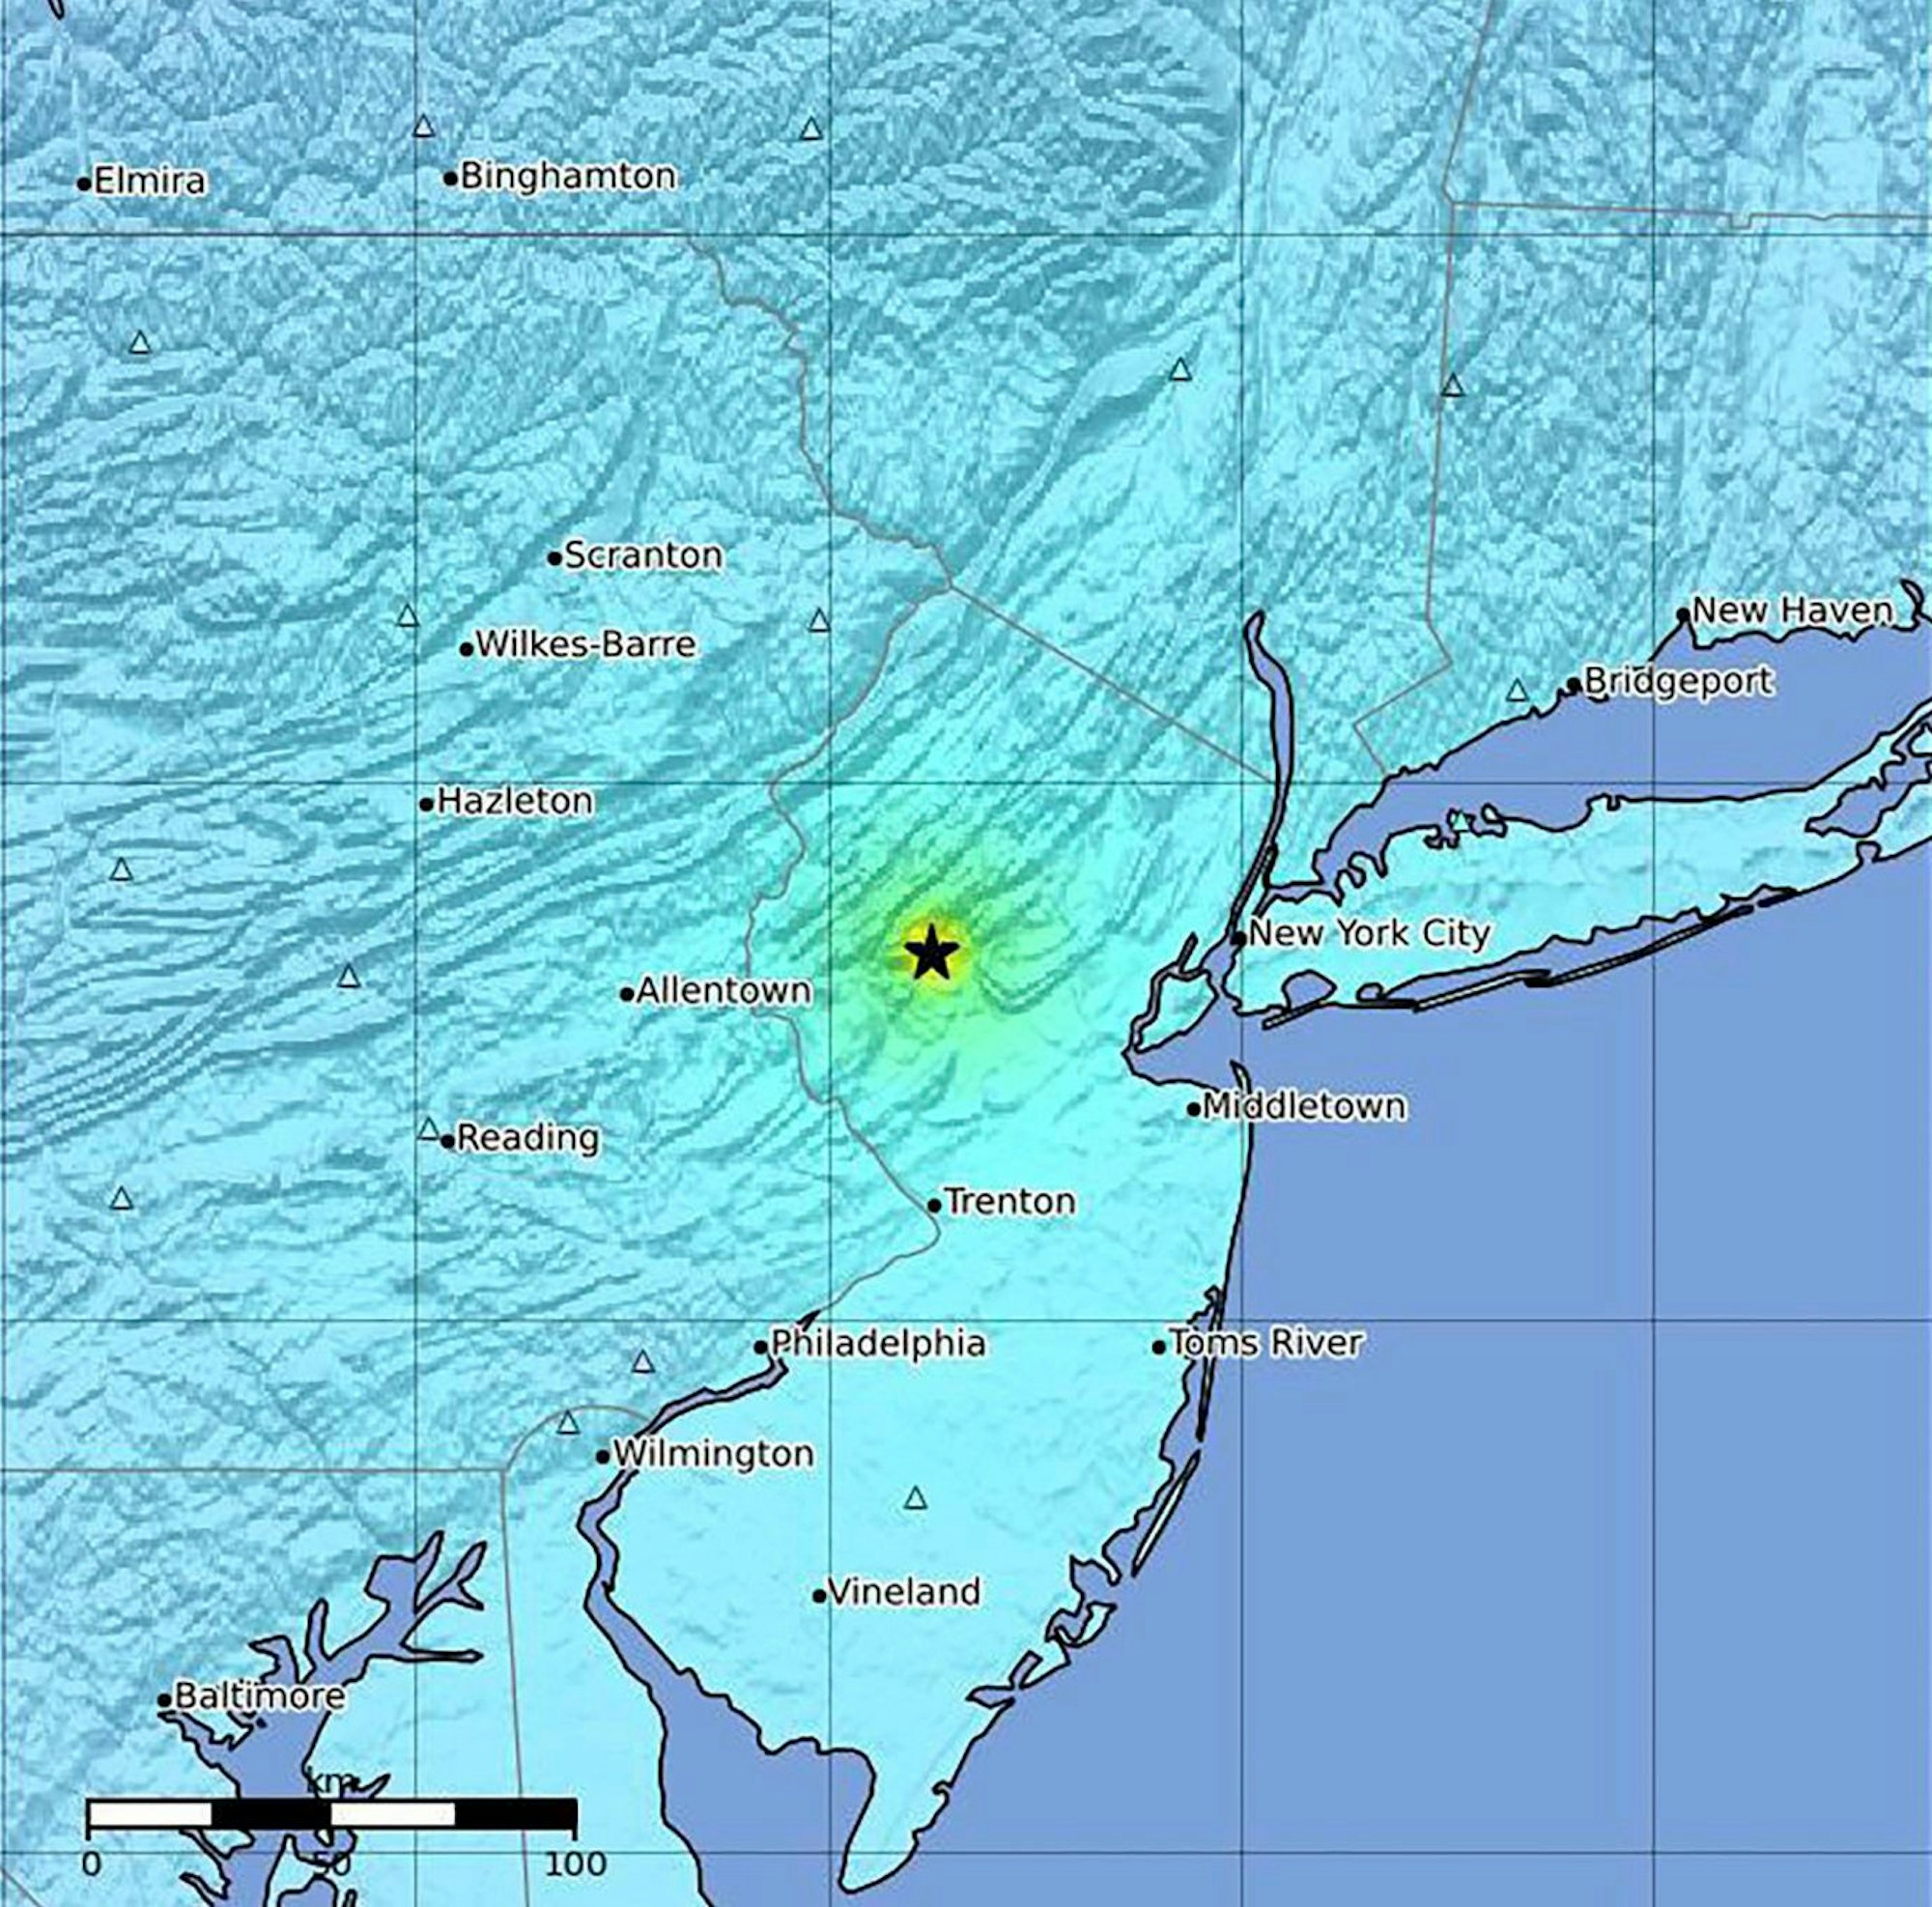 Diese vom U.S. Geological Survey zur Verfügung gestellte Landkarte zeigt das Epizentrum des Erdbebens an der Ostküste der USA.